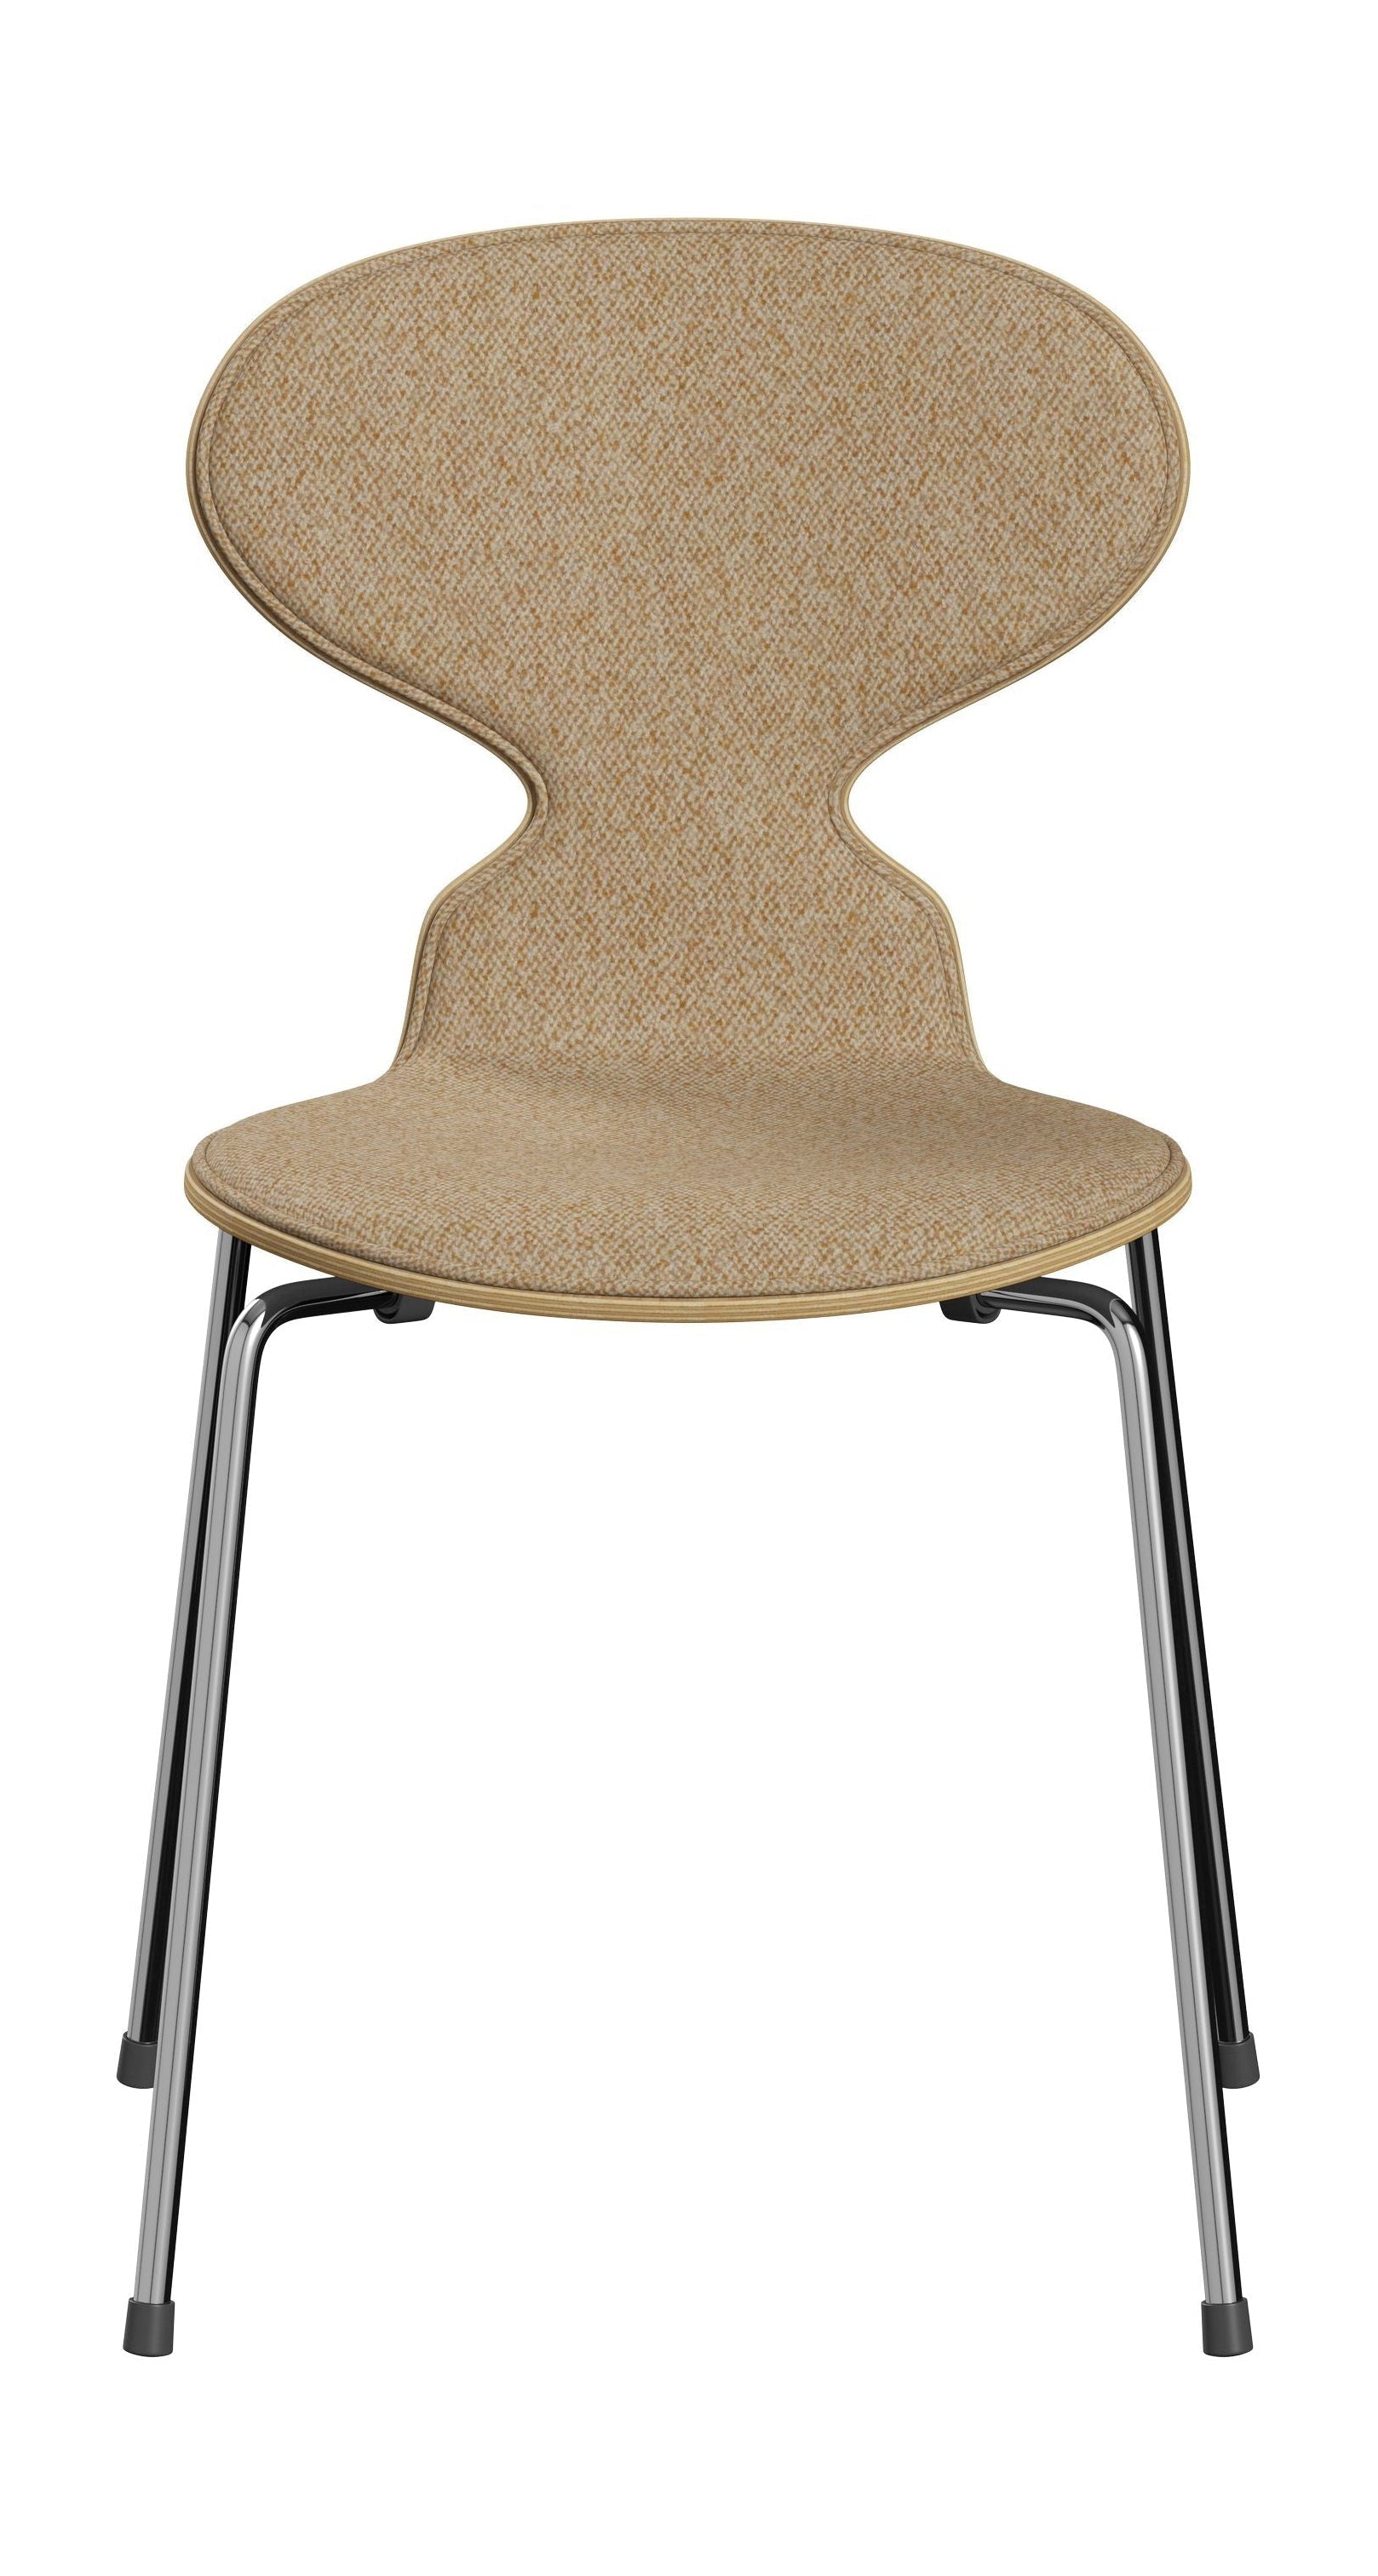 Fritz Hansen 3101 Ant stol foran polstret, skall: klar lakkert finér Eiche, møbeltrekk: Vanir tekstil beige sennep, base: stål/krom